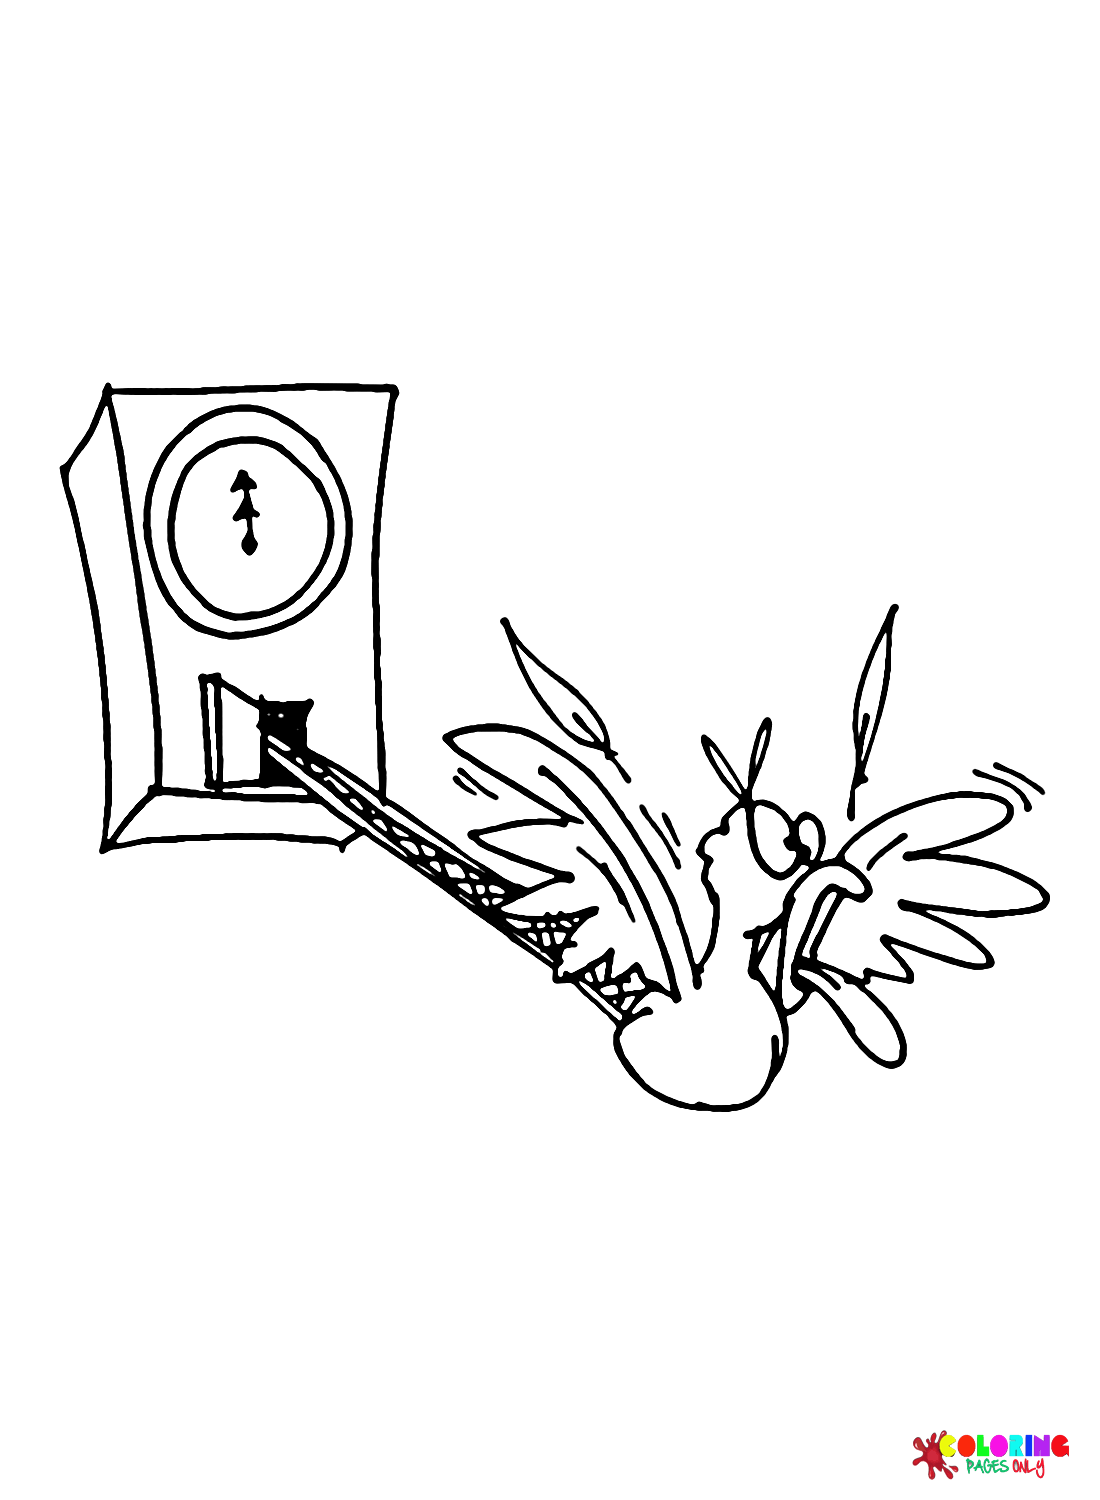 Clock Cuckoo Coloring Page